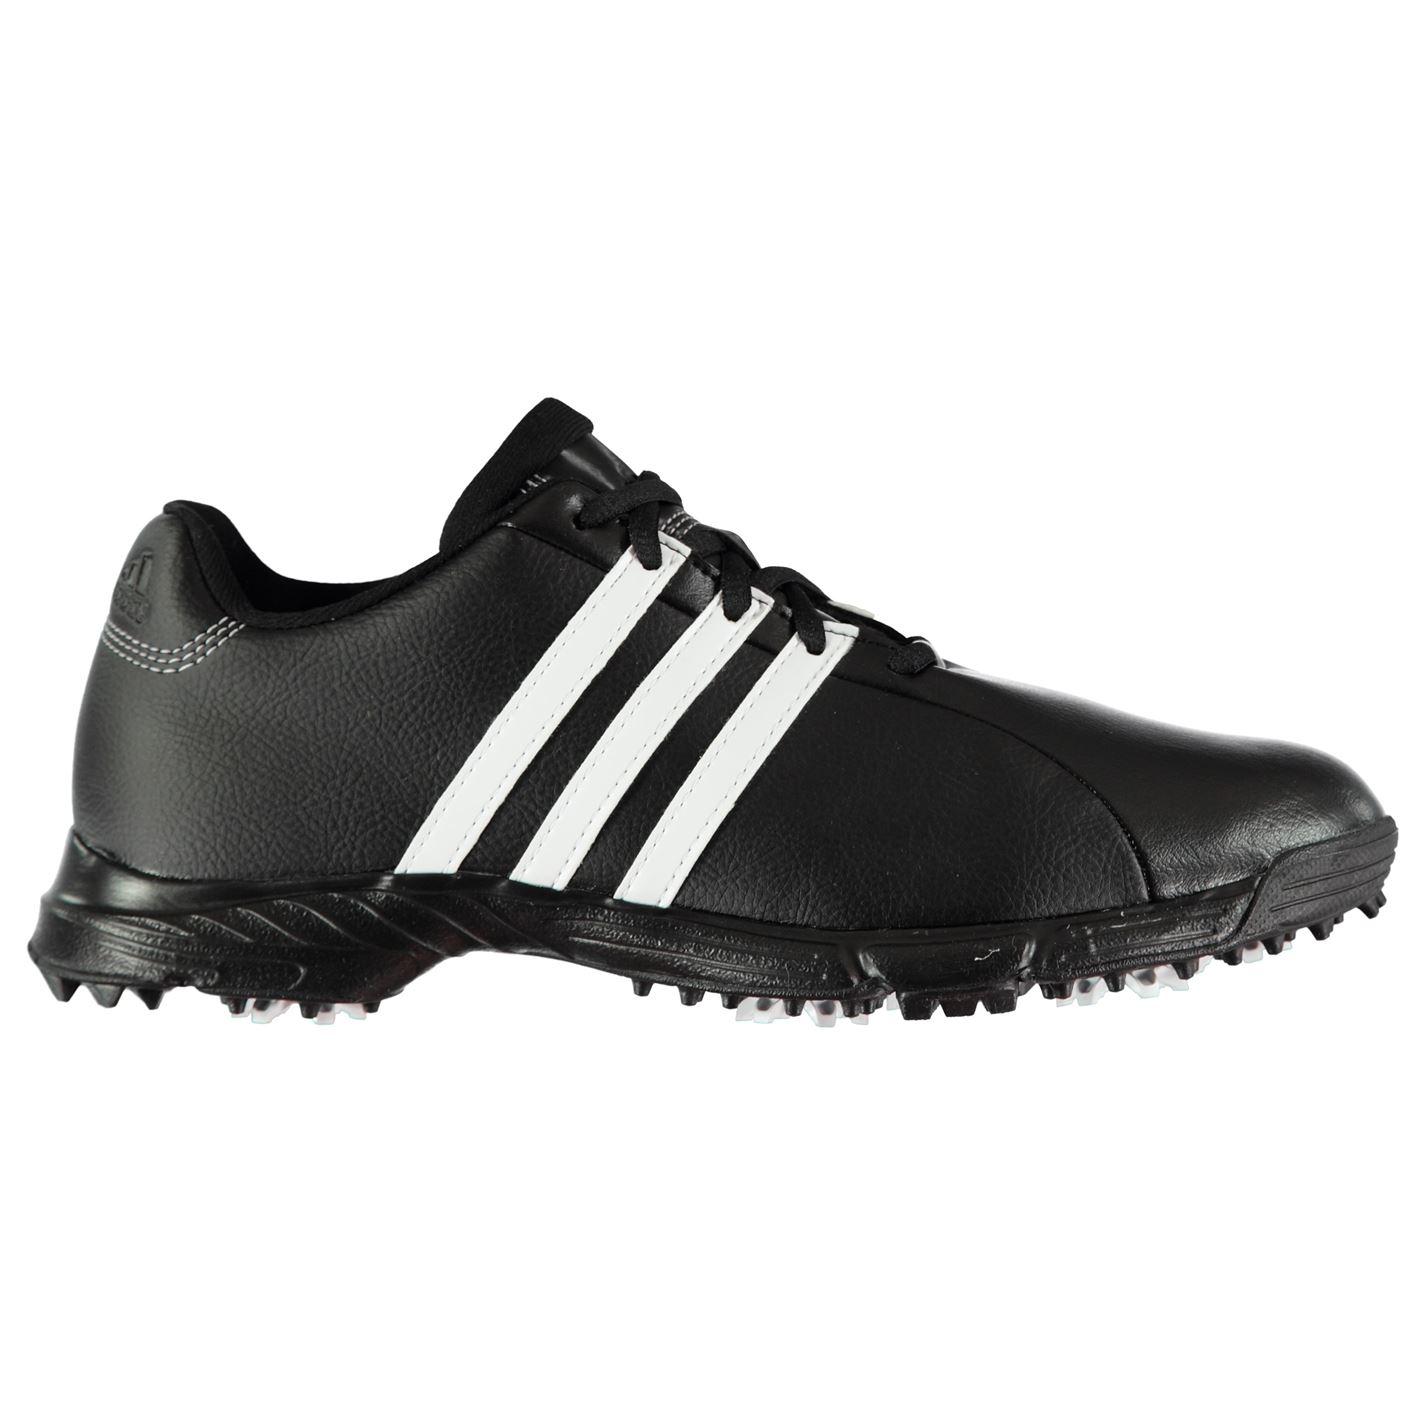 Adidas Golflite Mens Golf Shoes